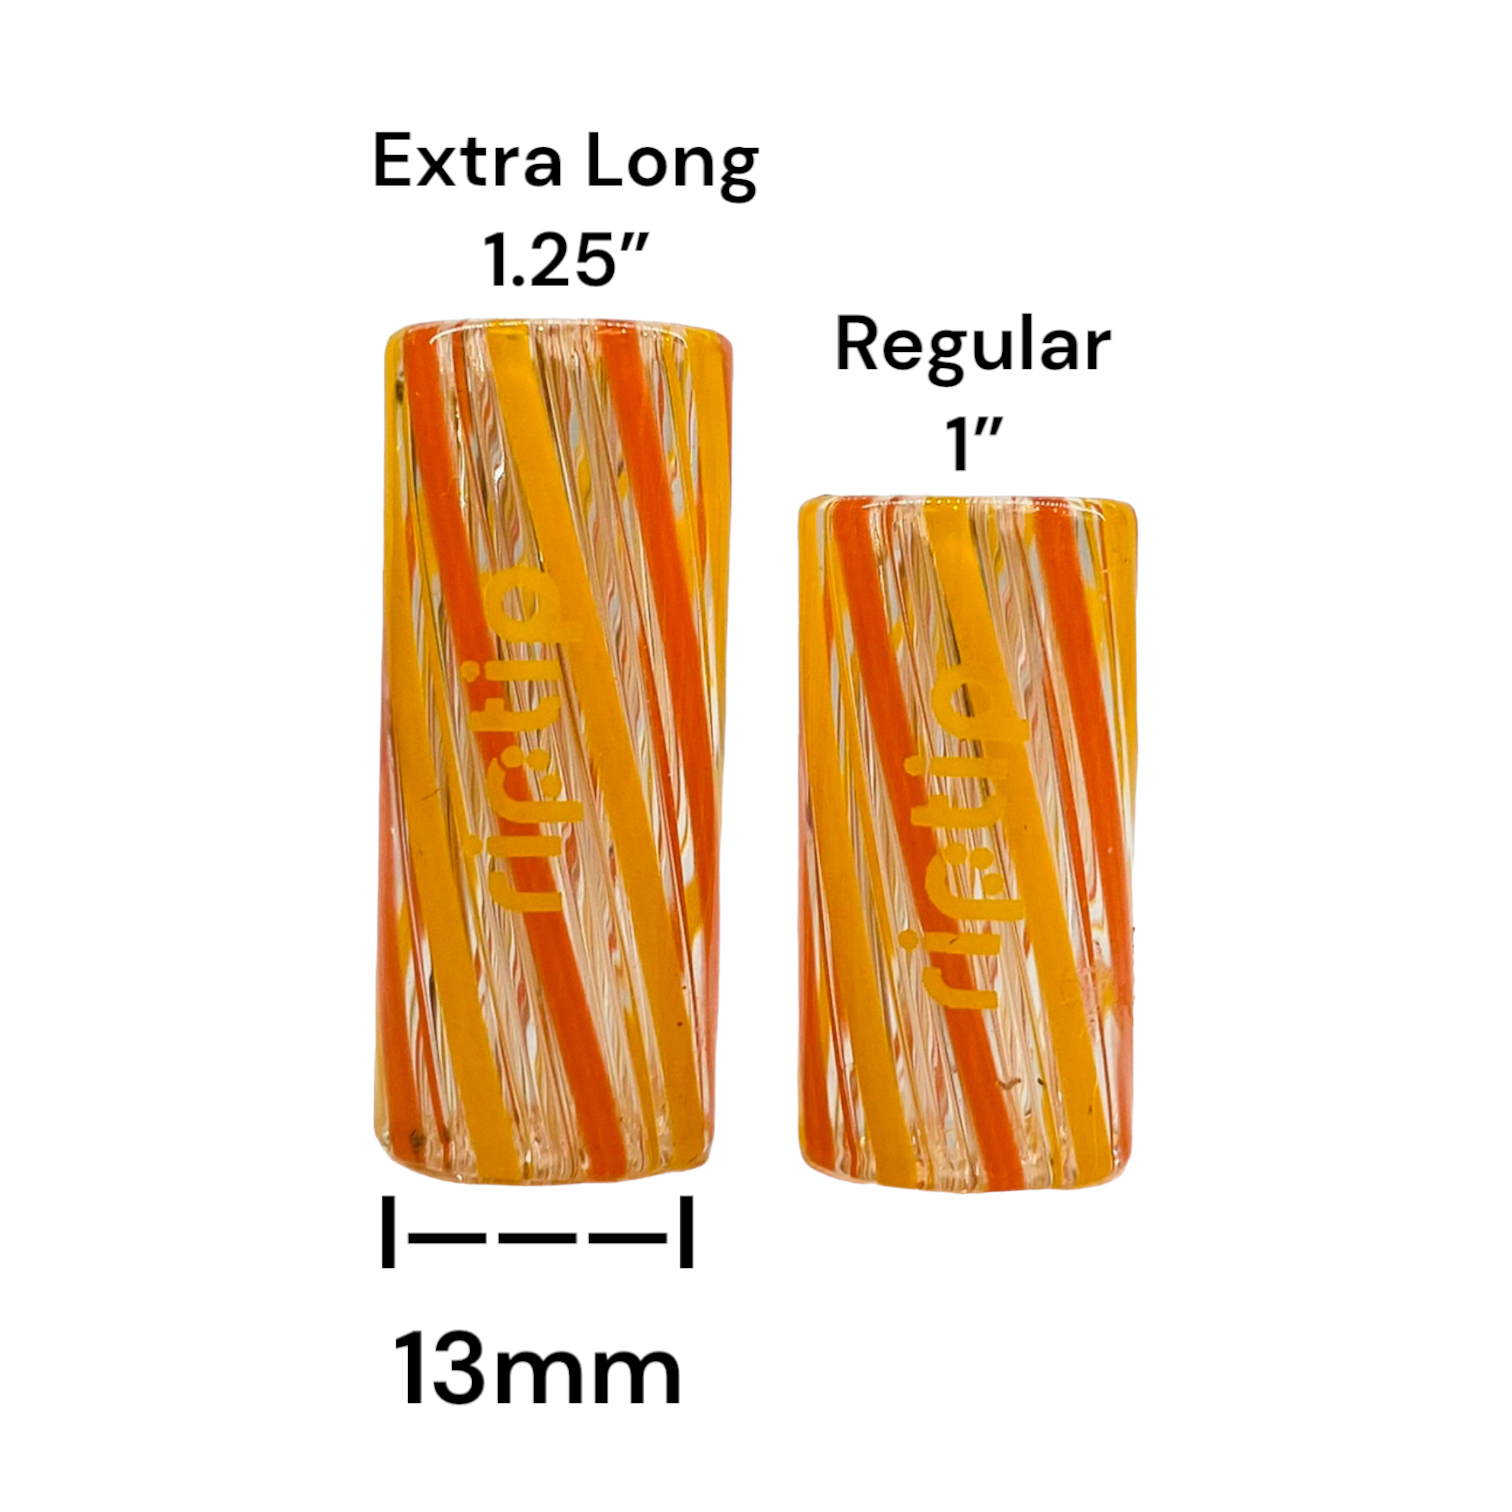 Gordo Scientific - RipTip - Citrus Orange & Yellow 13mm Wide Extra Long